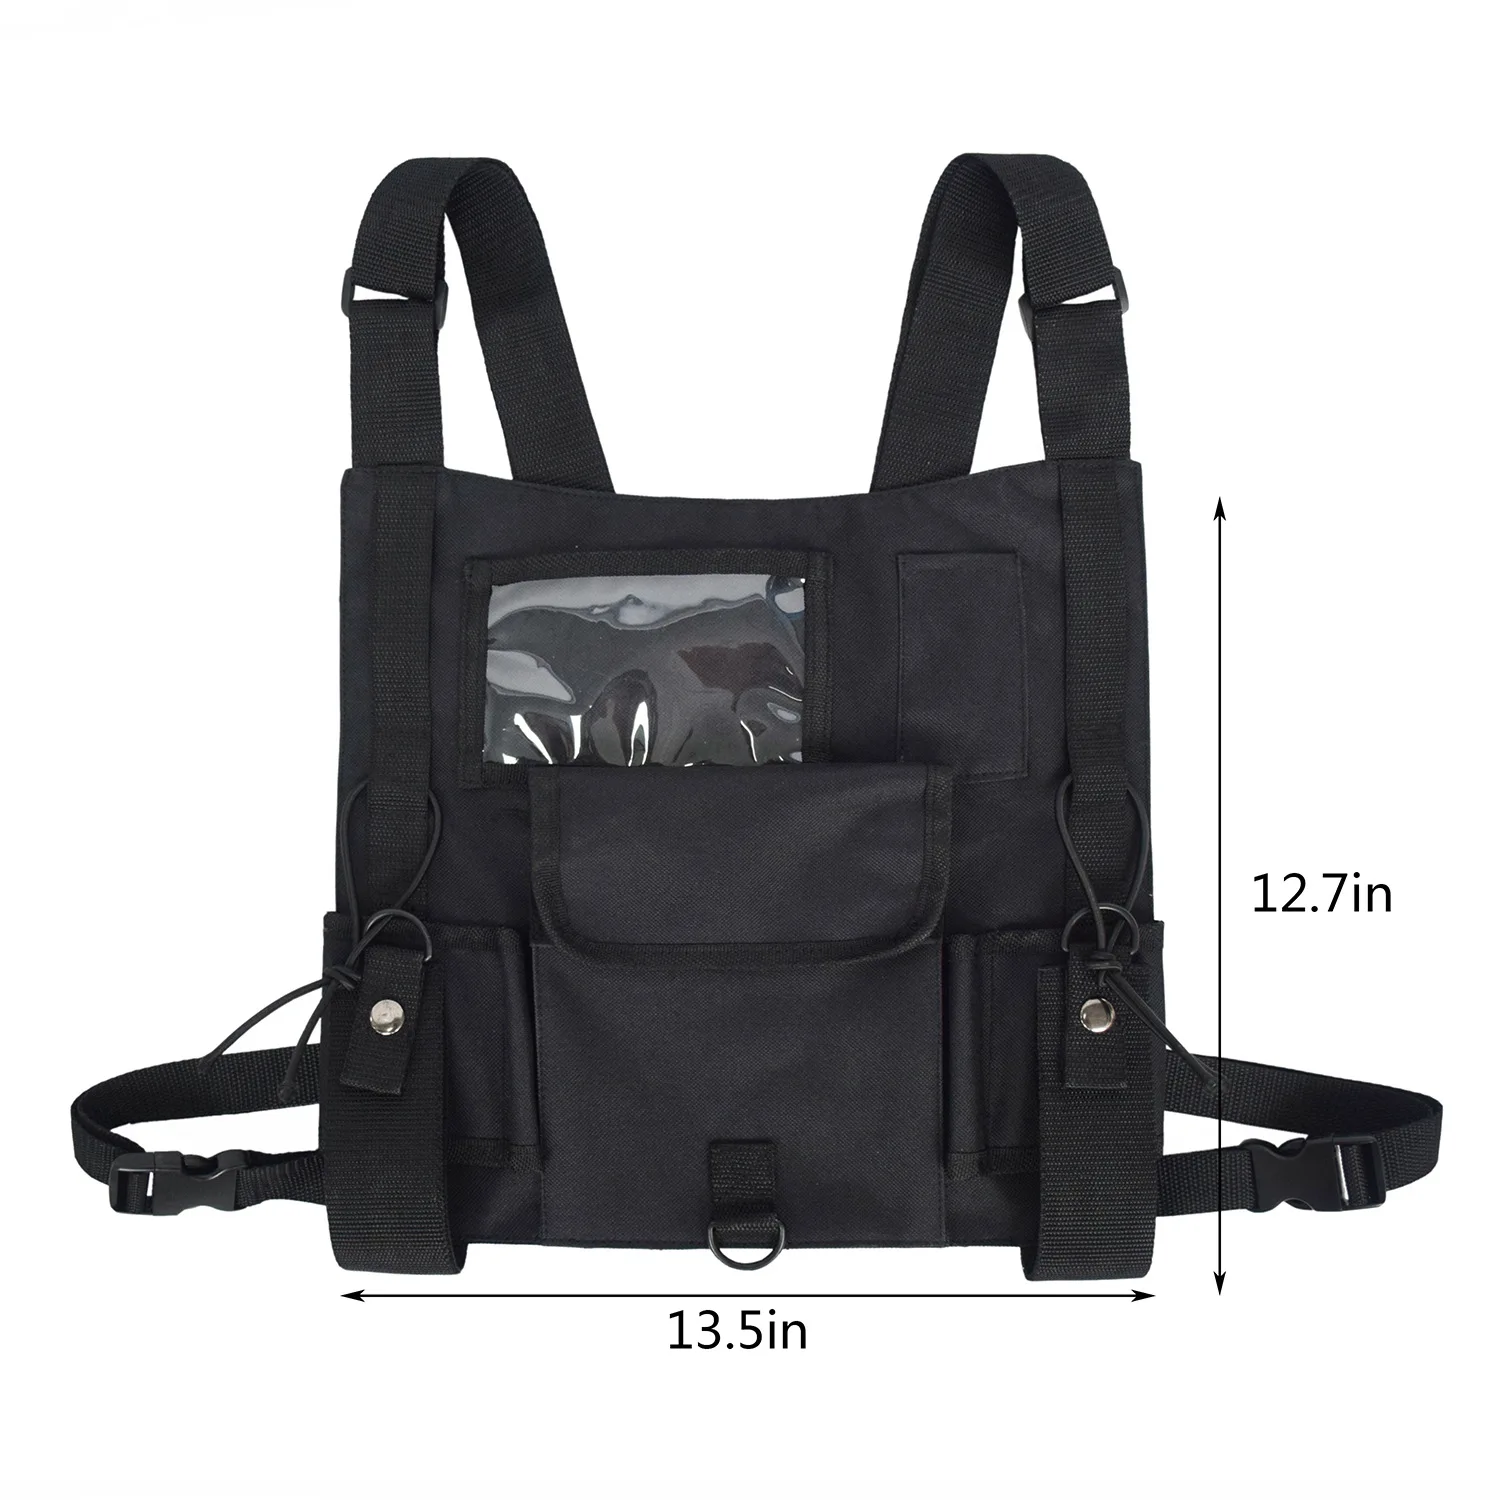 2019 тактическая сумка поясная Грудь Rig хип-хоп Уличная мужская сумка функциональная тактическая сумка жилет с облегченной модульной